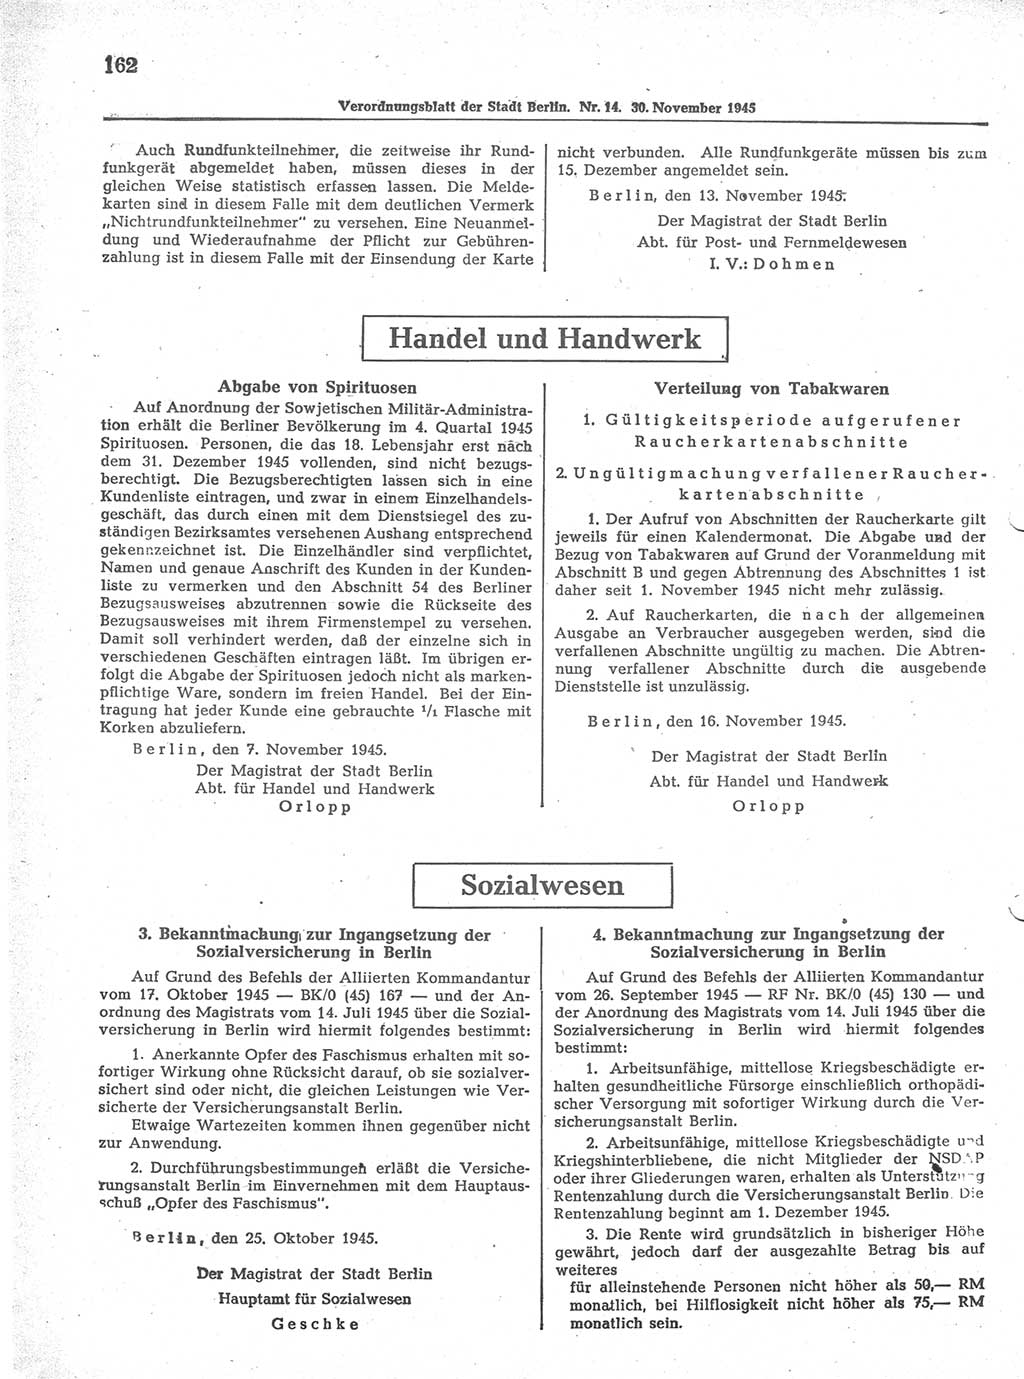 Verordnungsblatt (VOBl.) der Stadt Berlin 1945, Seite 162 (VOBl. Bln. 1945, S. 162)